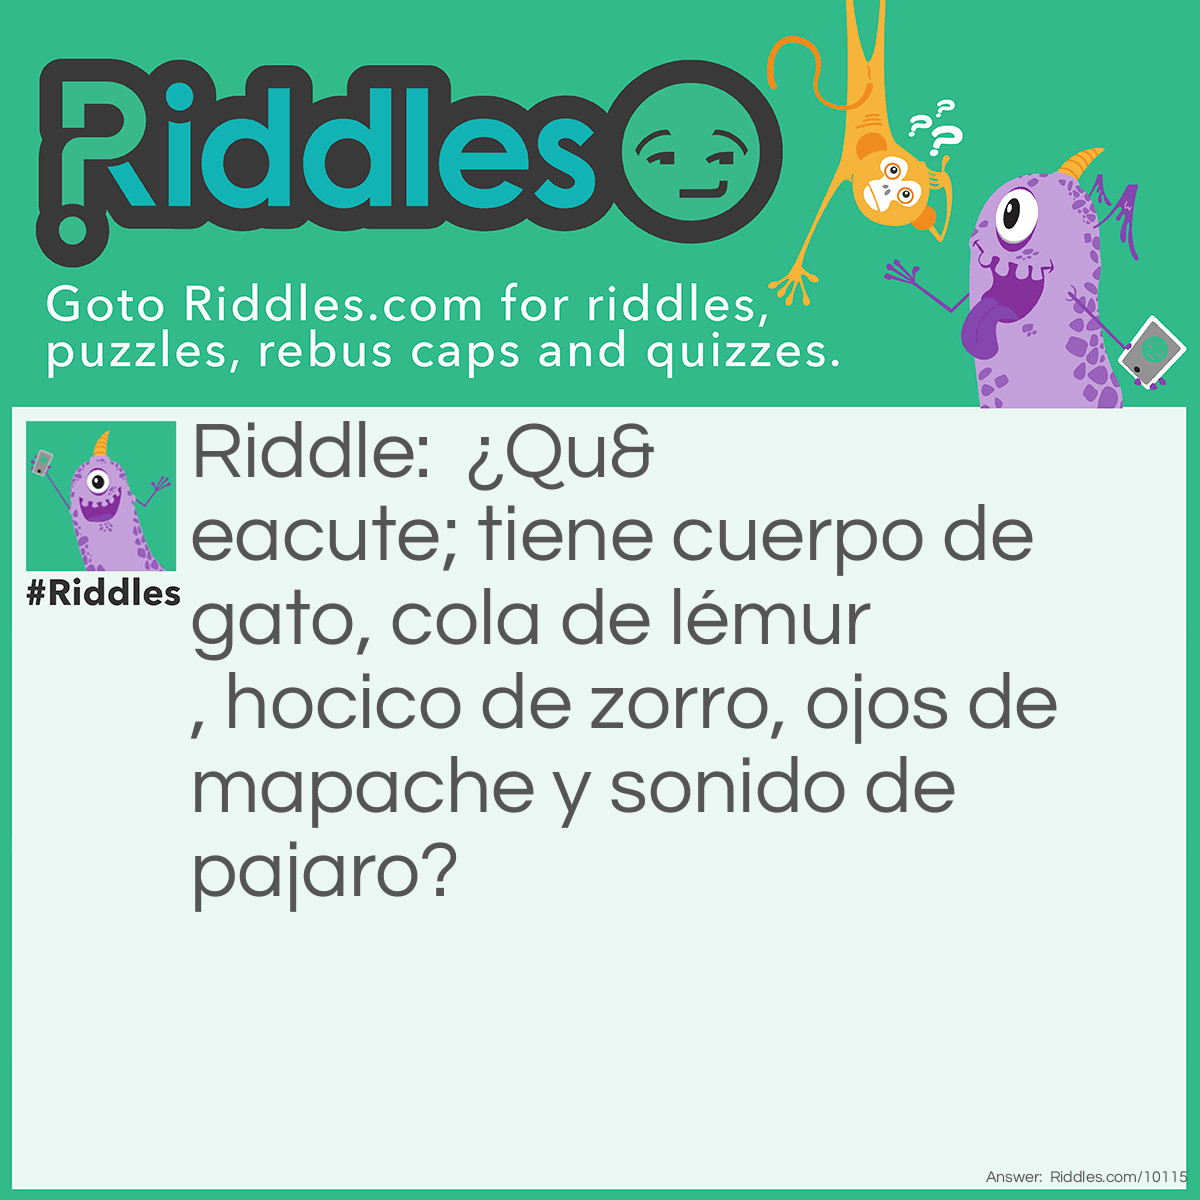 Riddle: ¿Qué tiene cuerpo de gato, cola de lémur, hocico de zorro, ojos de mapache y sonido de pajaro? Answer: Cacomixtle